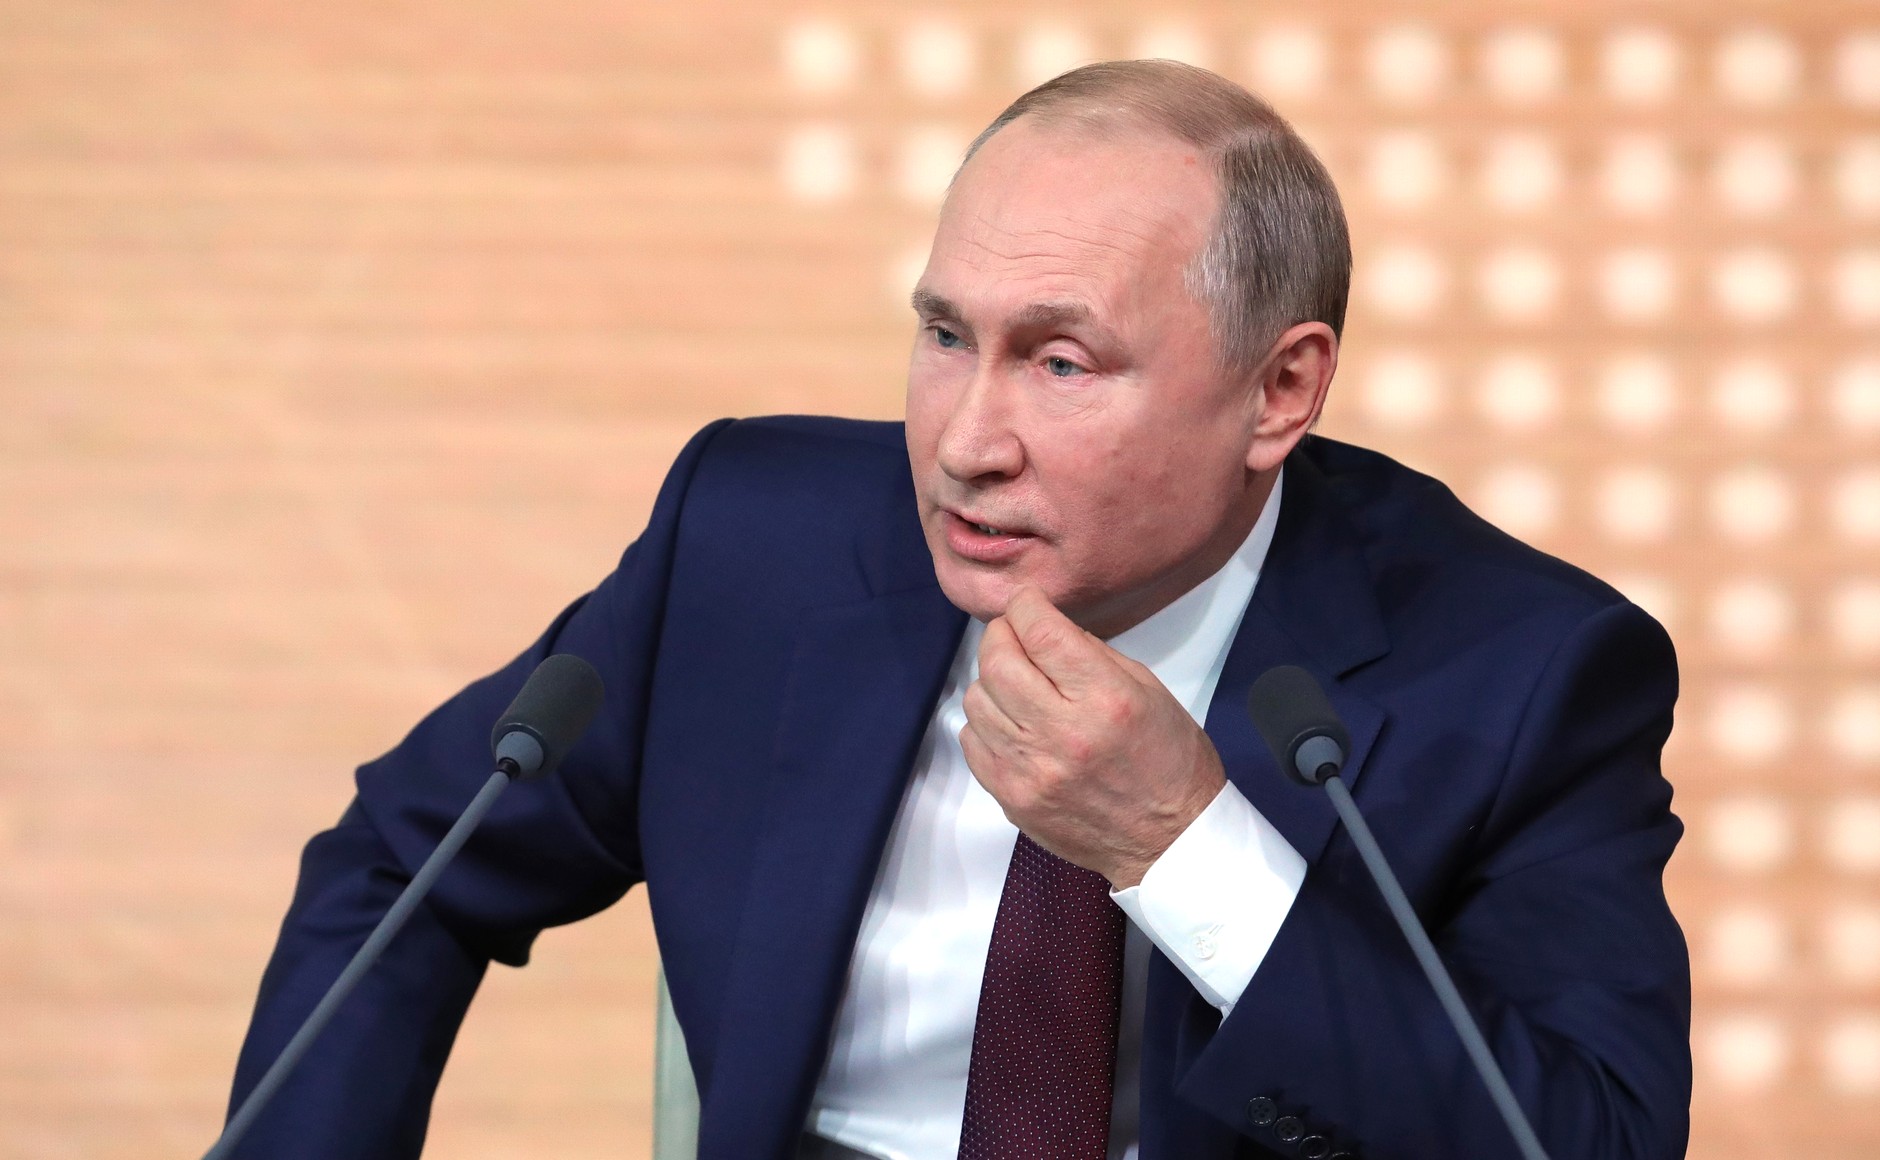 Обращение Путина – смотреть видео трансляцию онлайн сегодня 28.04.2020 о продлении карантина на май